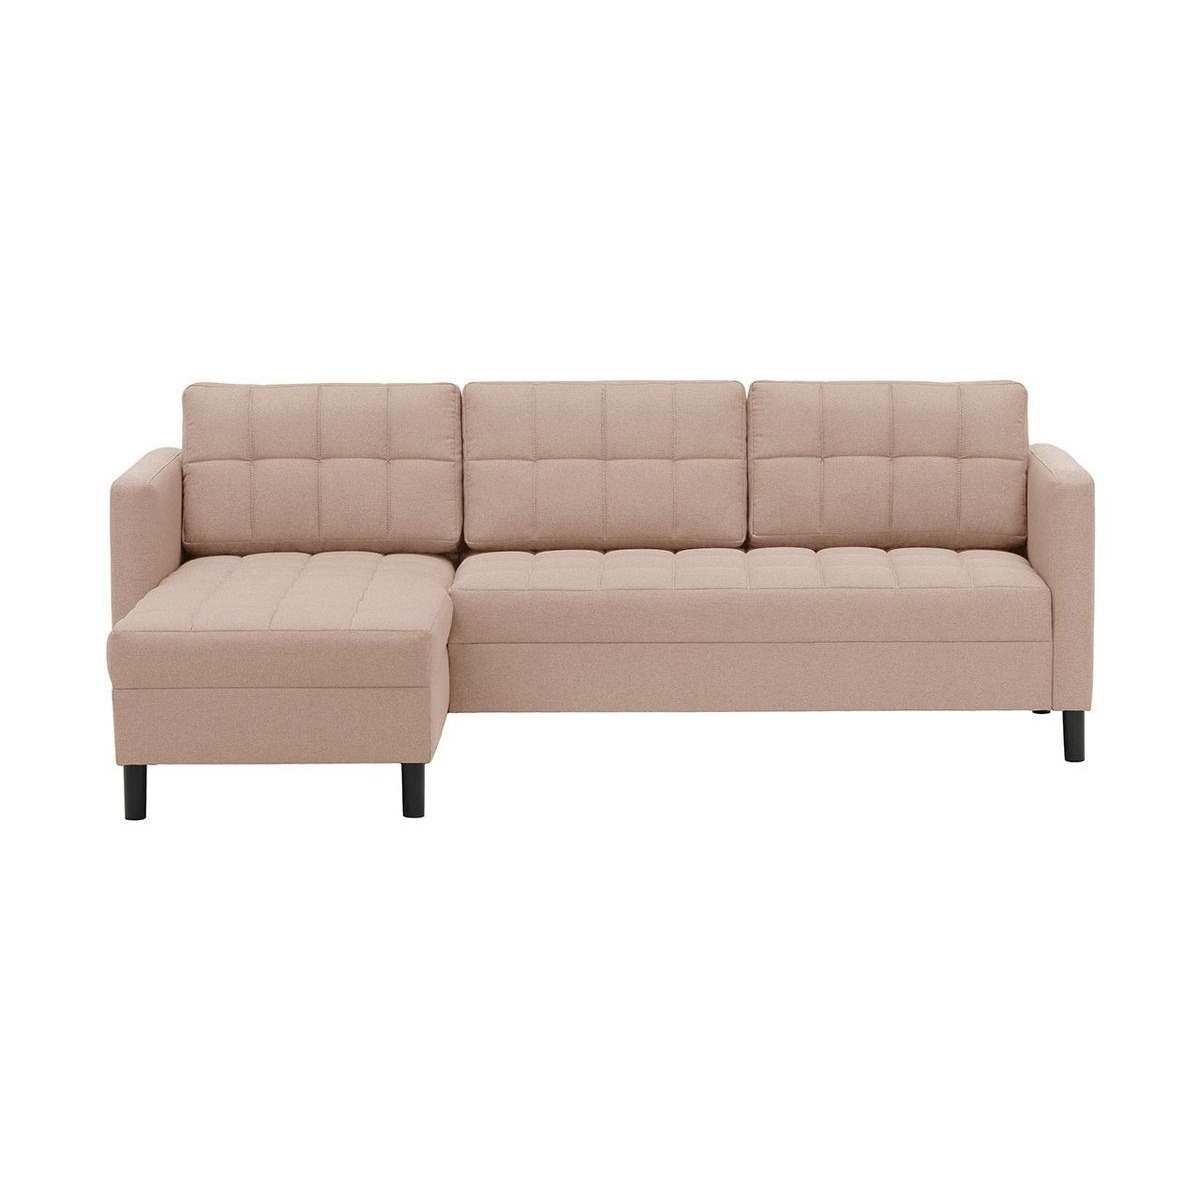 Ludo Universal Corner Sofa Bed, pastel pink - image 1